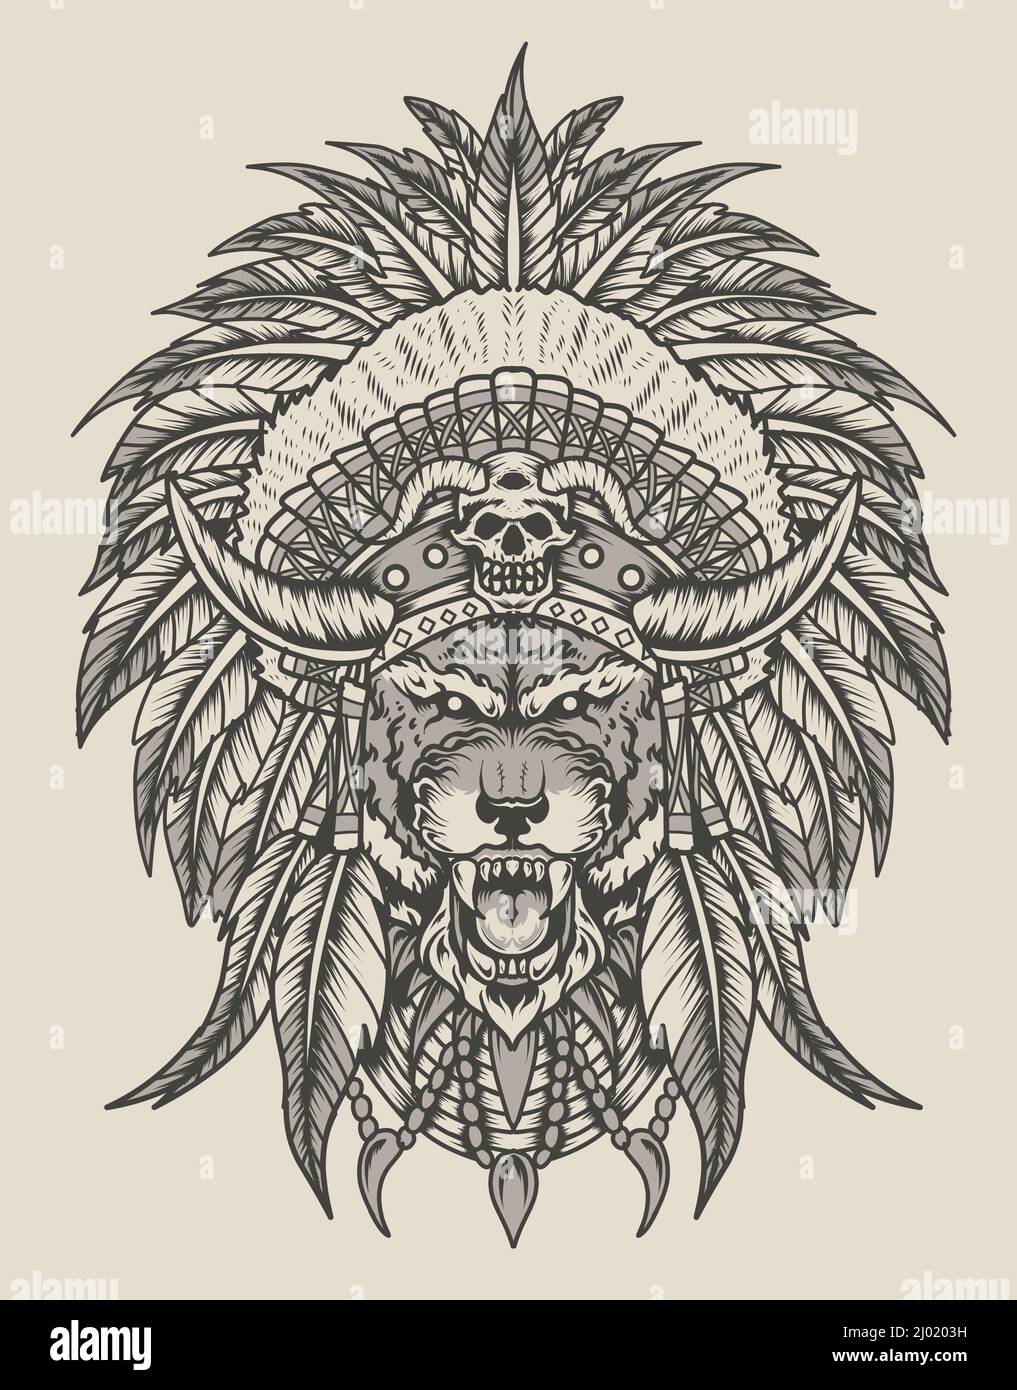 illustration de style indien tigre apache monochrome Illustration de Vecteur